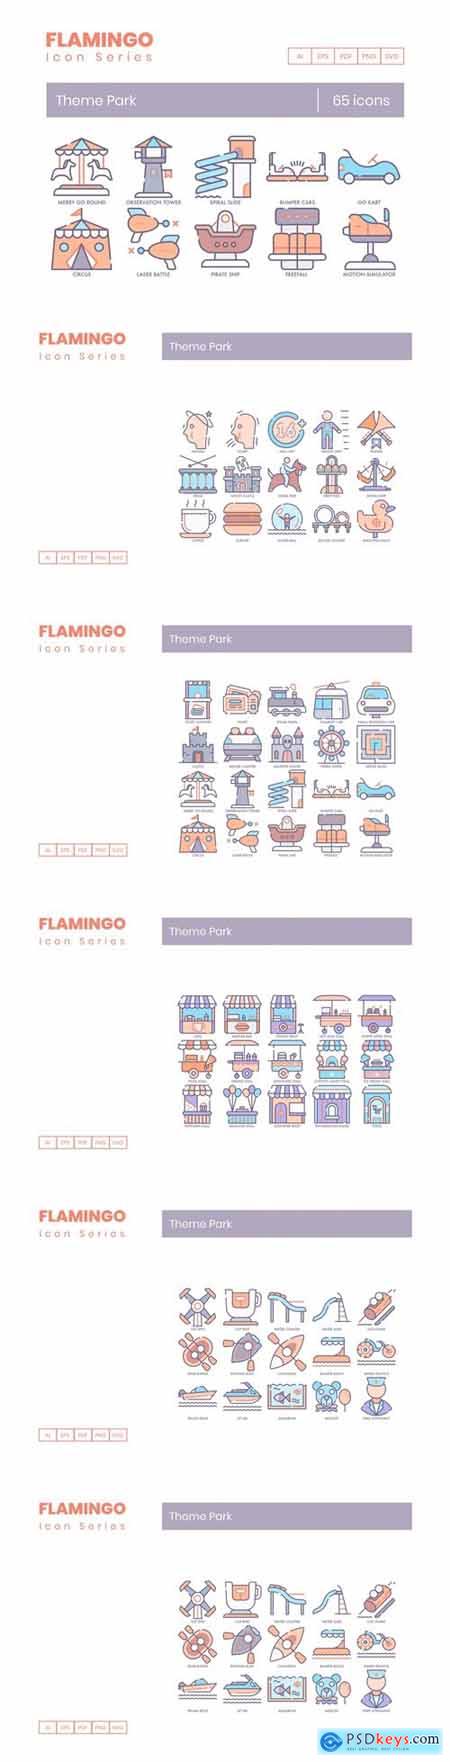 65 Theme Park Icons Flamingo Series